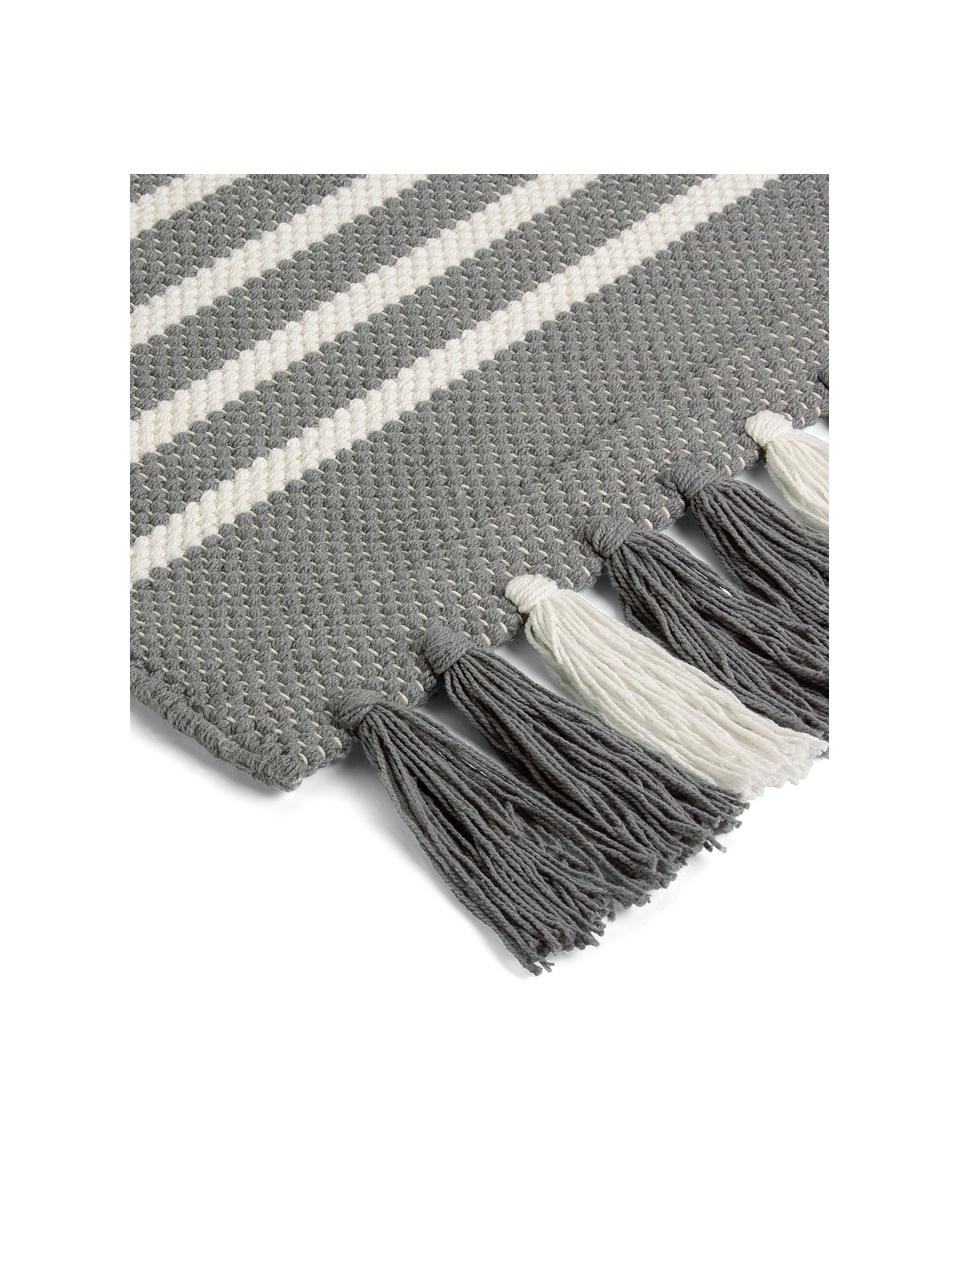 Gestreifter Badvorleger Stripes & Structure mit Fransenabschluss, 100% Baumwolle, Grau, gebrochenes Weiss, B 60 x L 100 cm